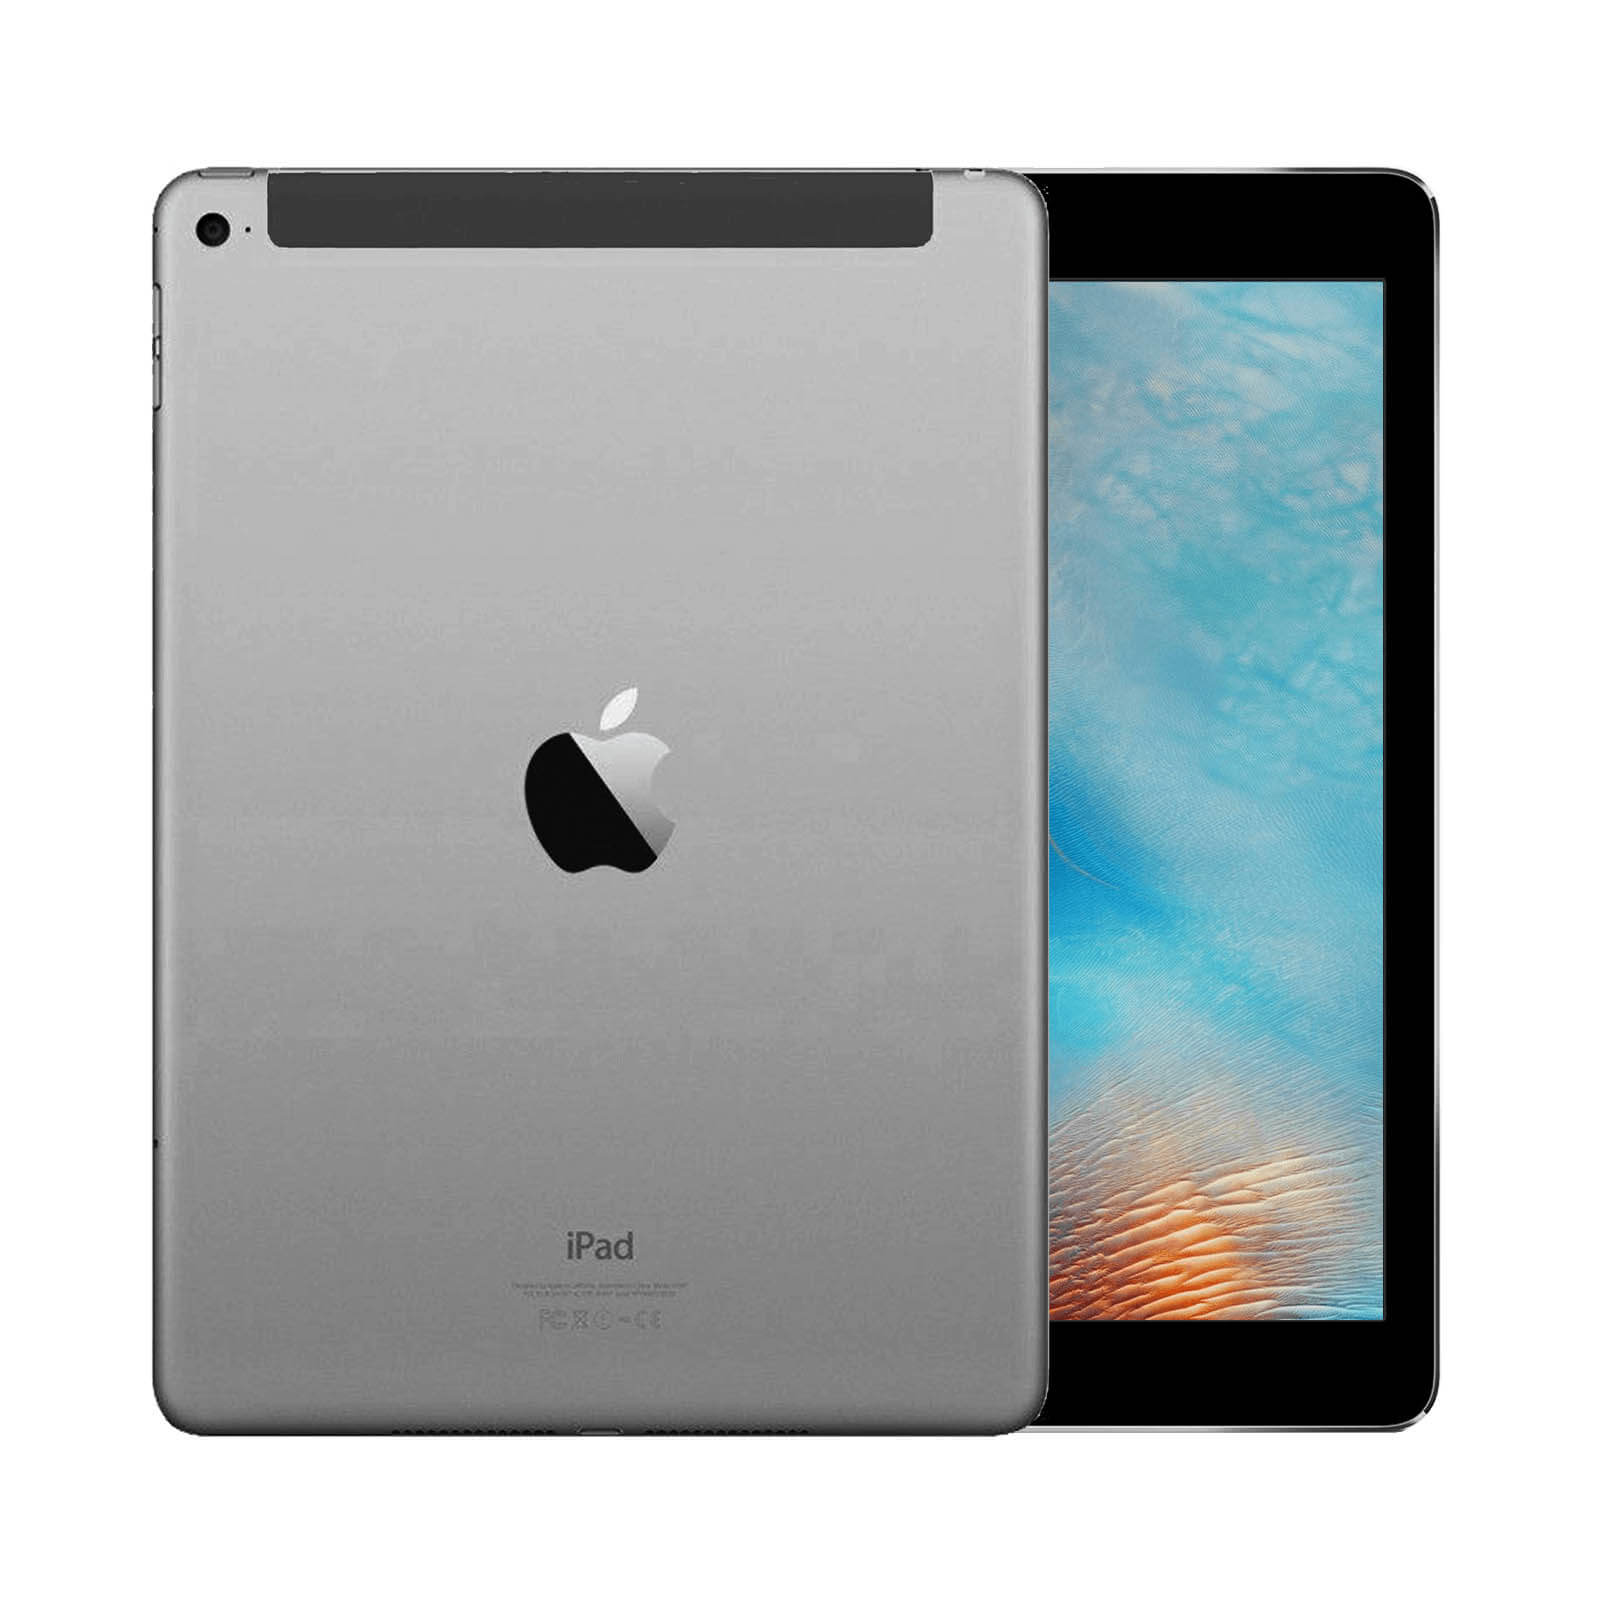 Apple iPad Air 3 32GB WiFi & Cellulare Grigio Siderale Come Nuovo